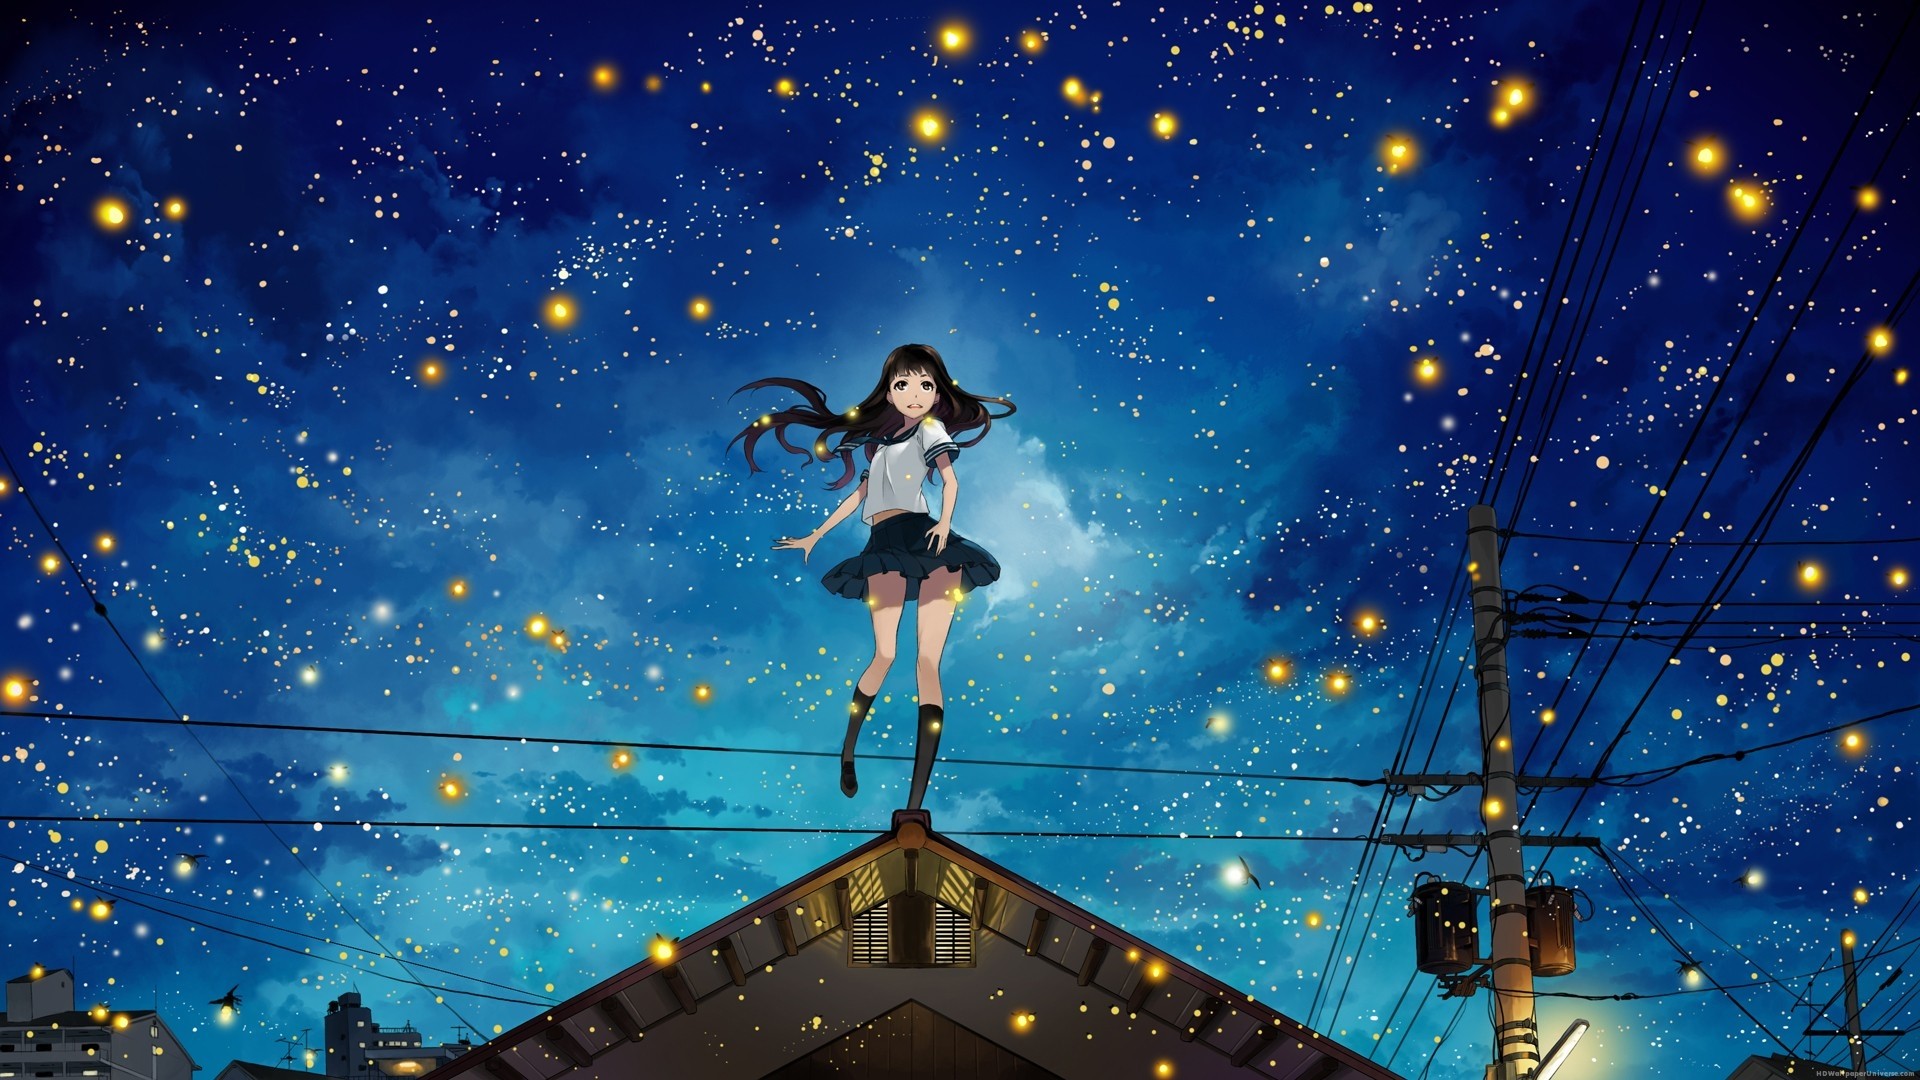 1920x1080 Night sky and fireflies anime girl HD Wallpaper -  http://www.hdwallpaperuniverse